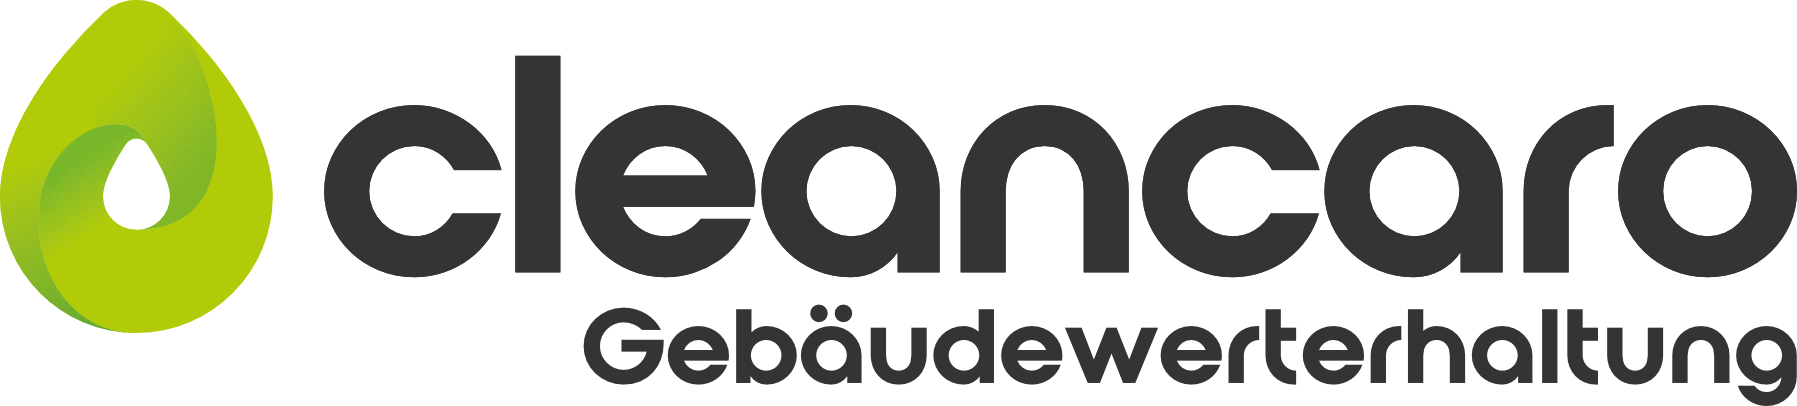 cleancaro Gebäudewerterhaltung logo